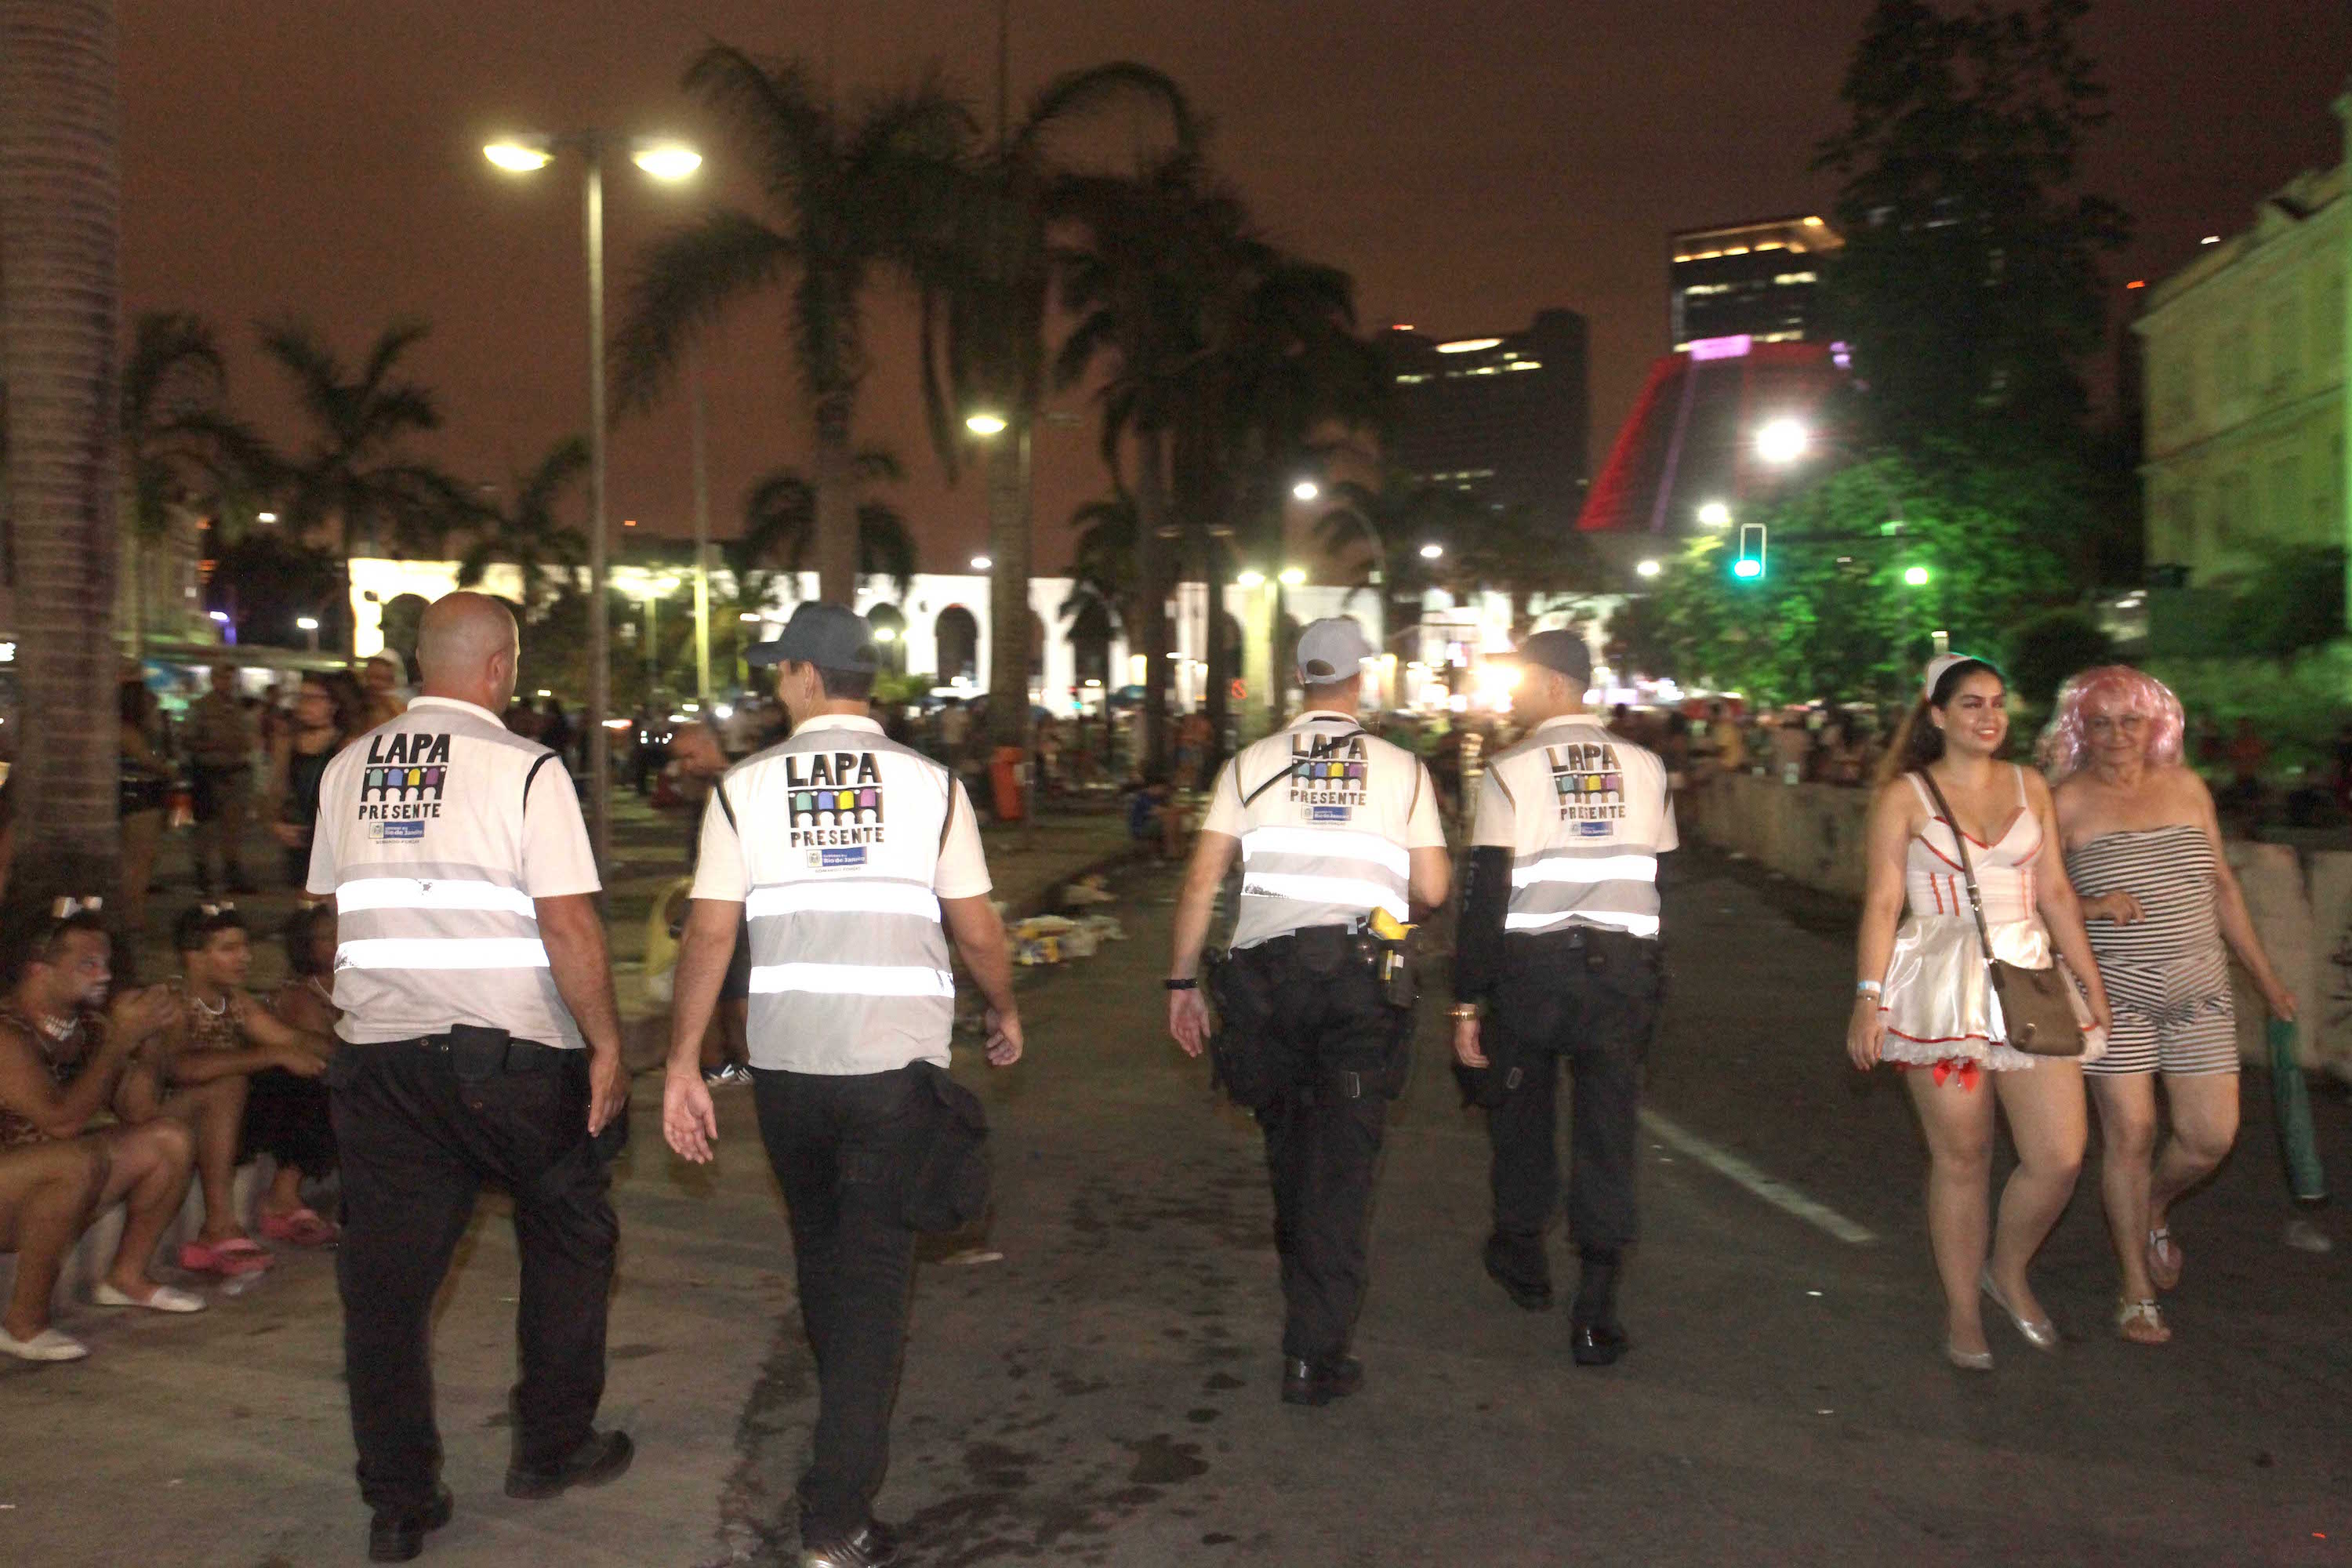 Lapa security increased for Carnival, Rio de Janeiro, Bbazil, Brazil news